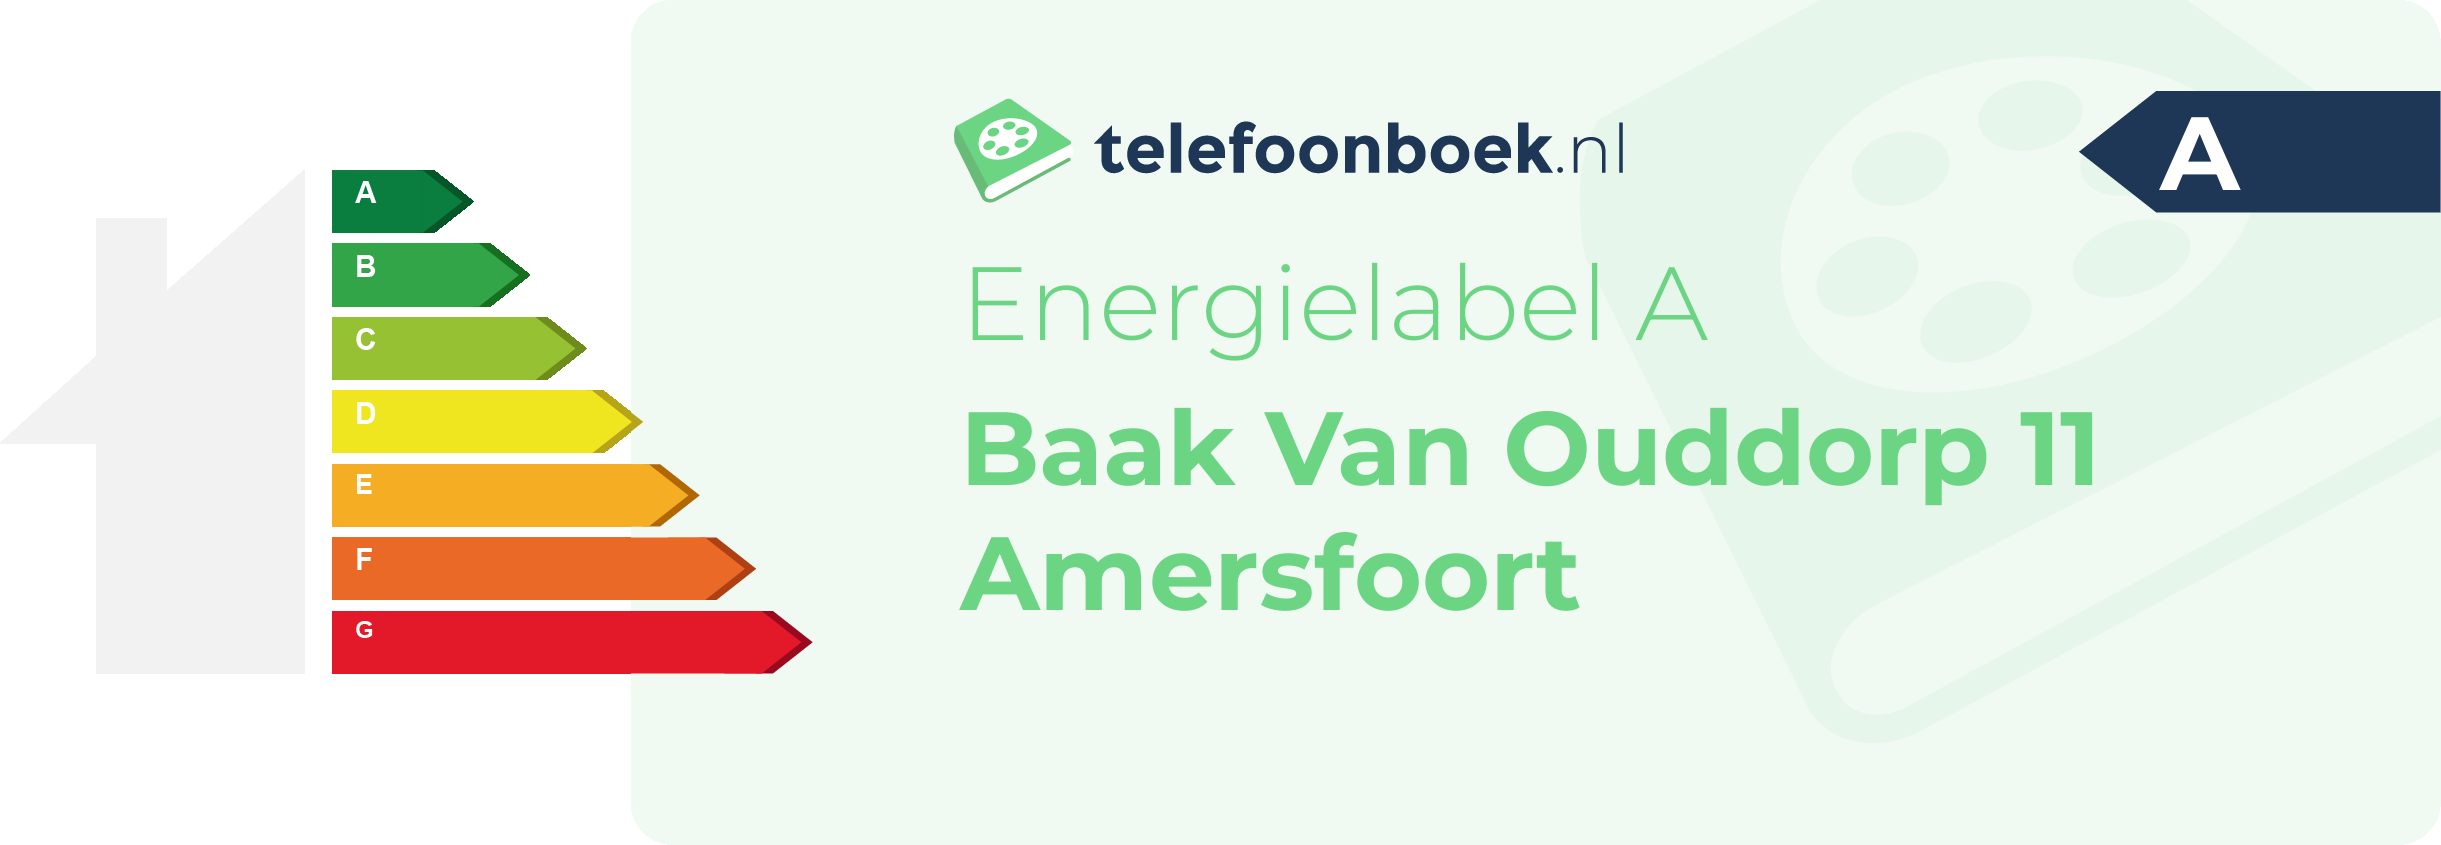 Energielabel Baak Van Ouddorp 11 Amersfoort